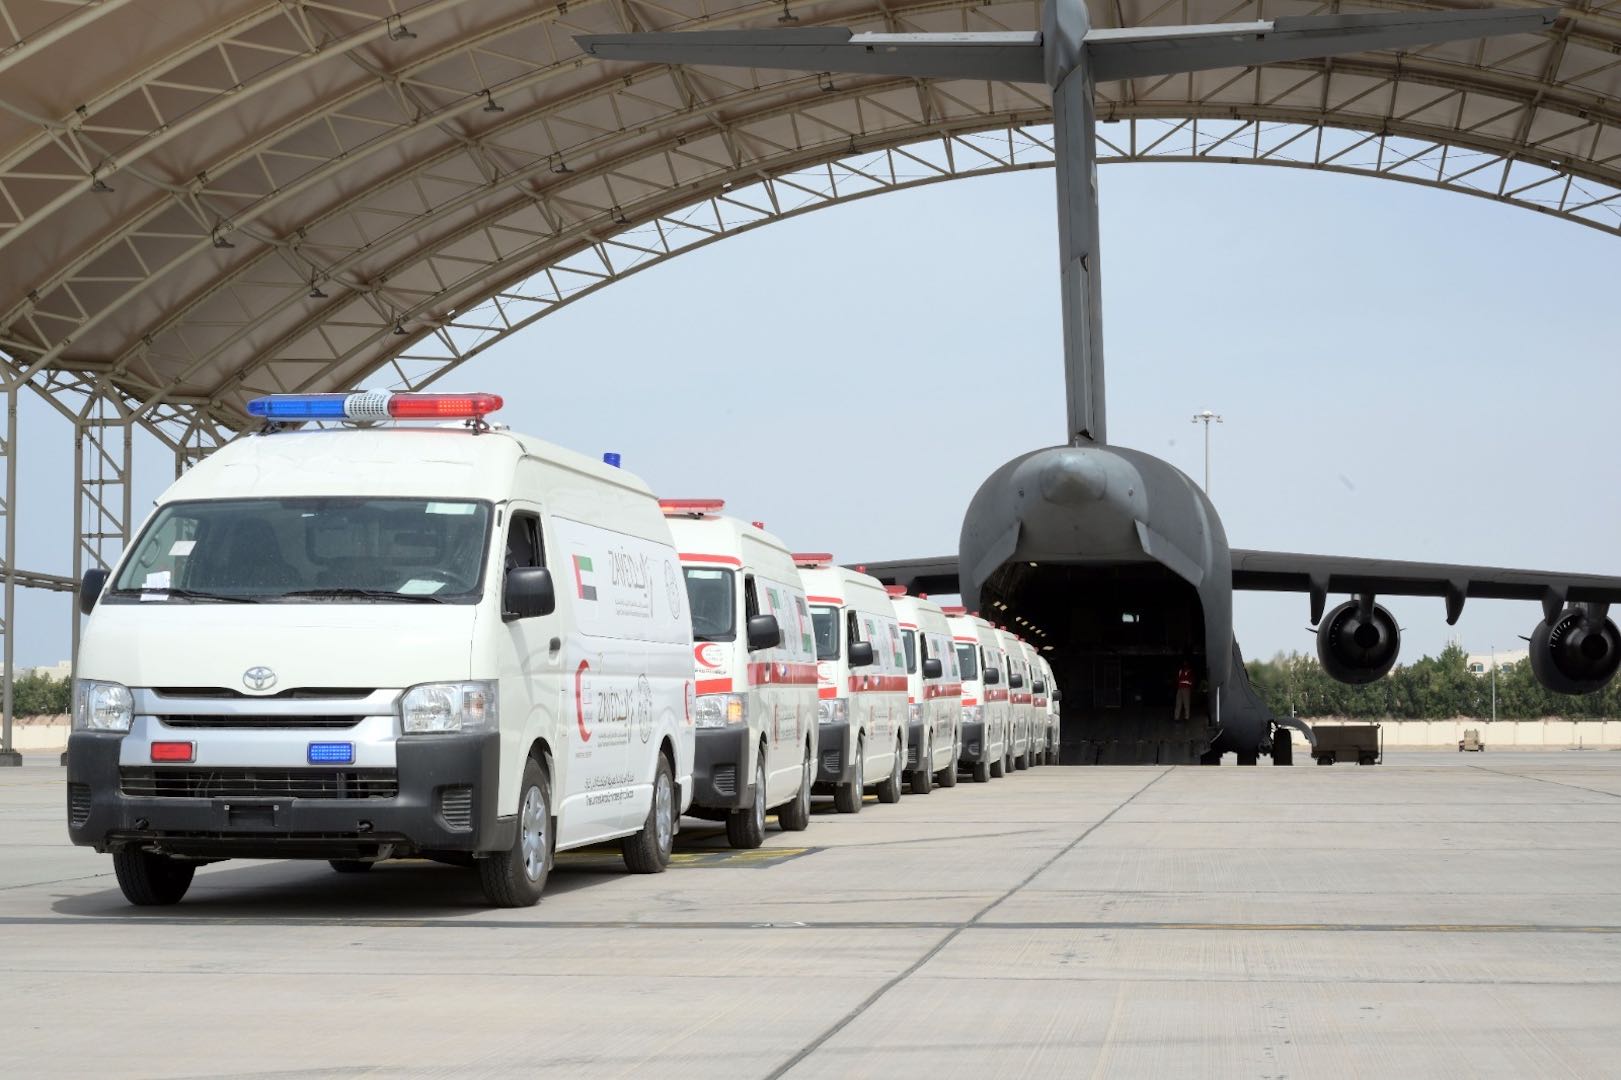 الإمارات توجه سيارات إسعاف مجهزة إلى العريش المصرية استعداداً لدخول قطاع غزة